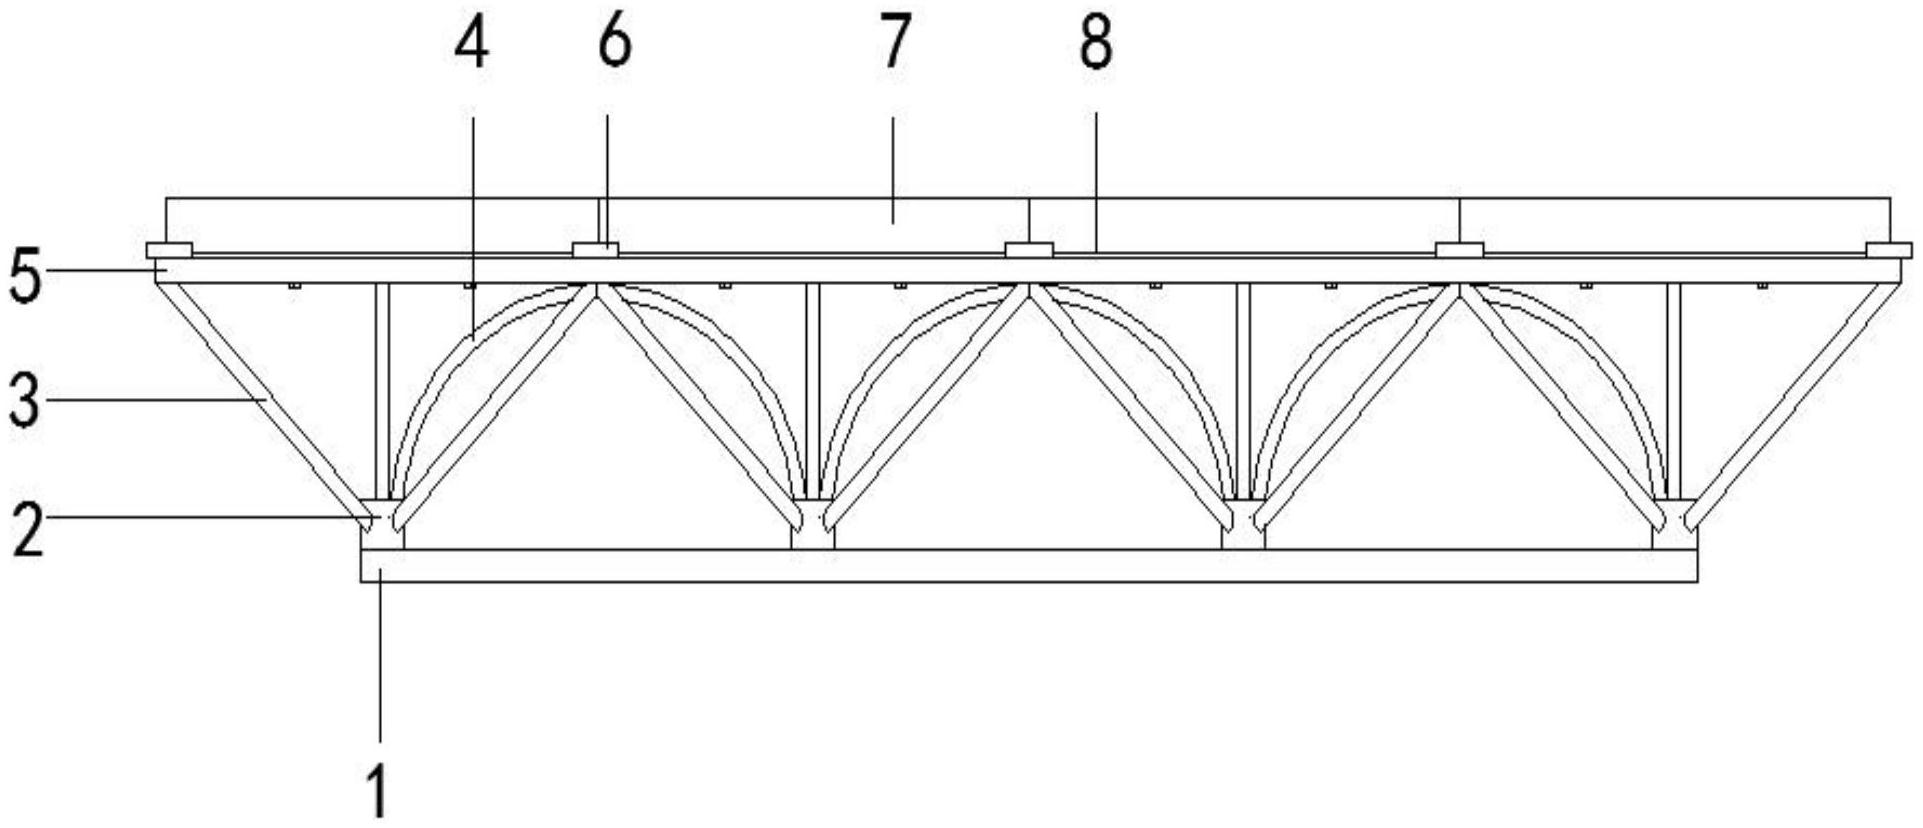 一种钢混结构轻型混凝板拼装结构专利图